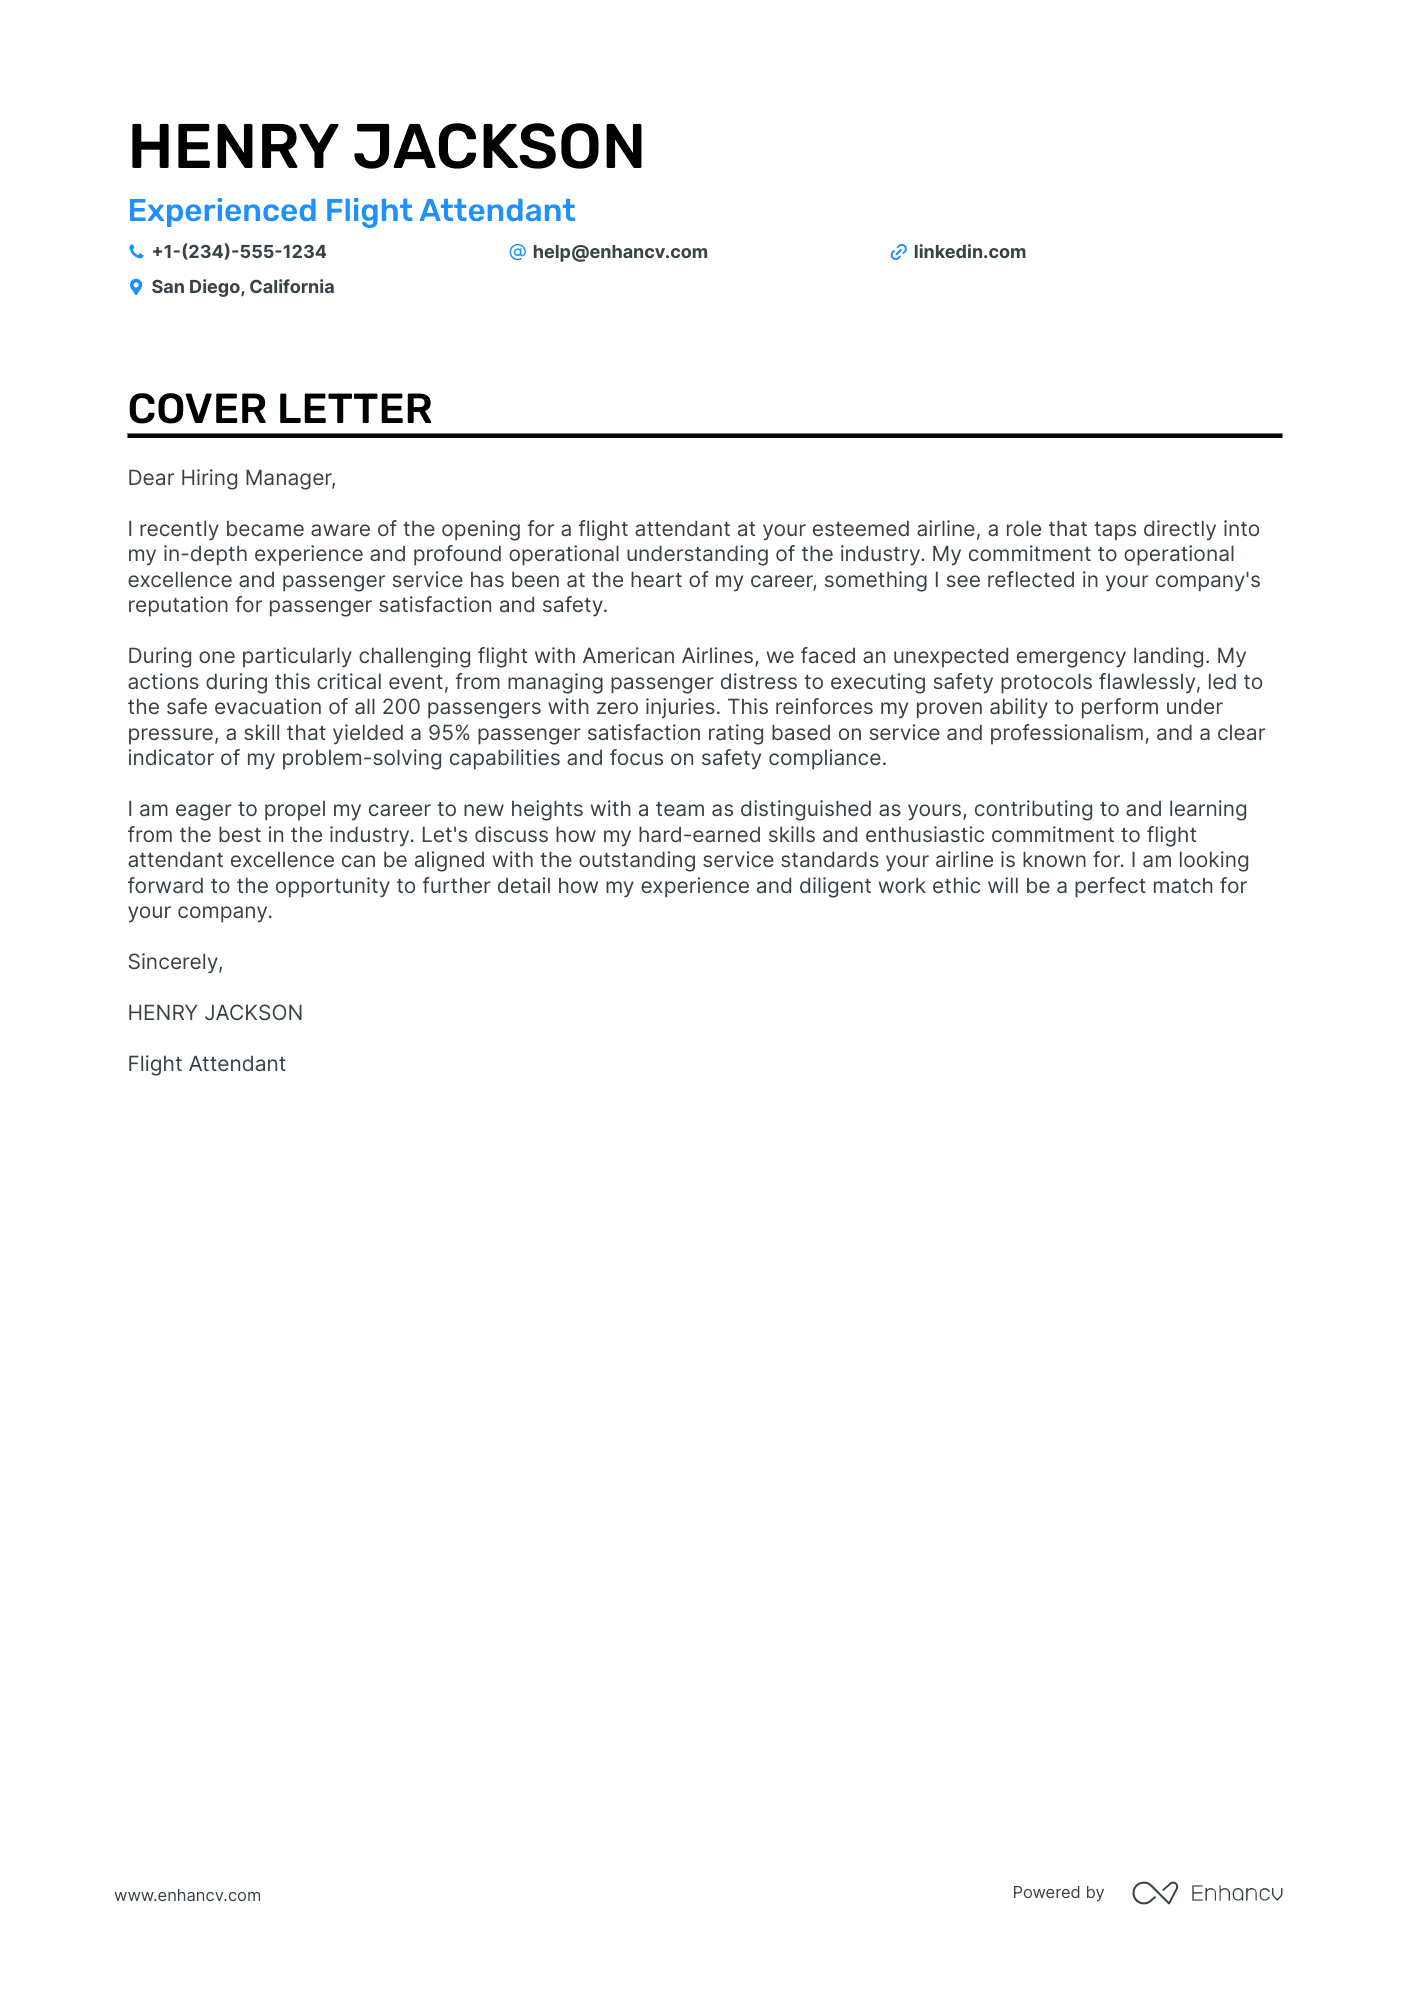 cover letter for applying flight attendant